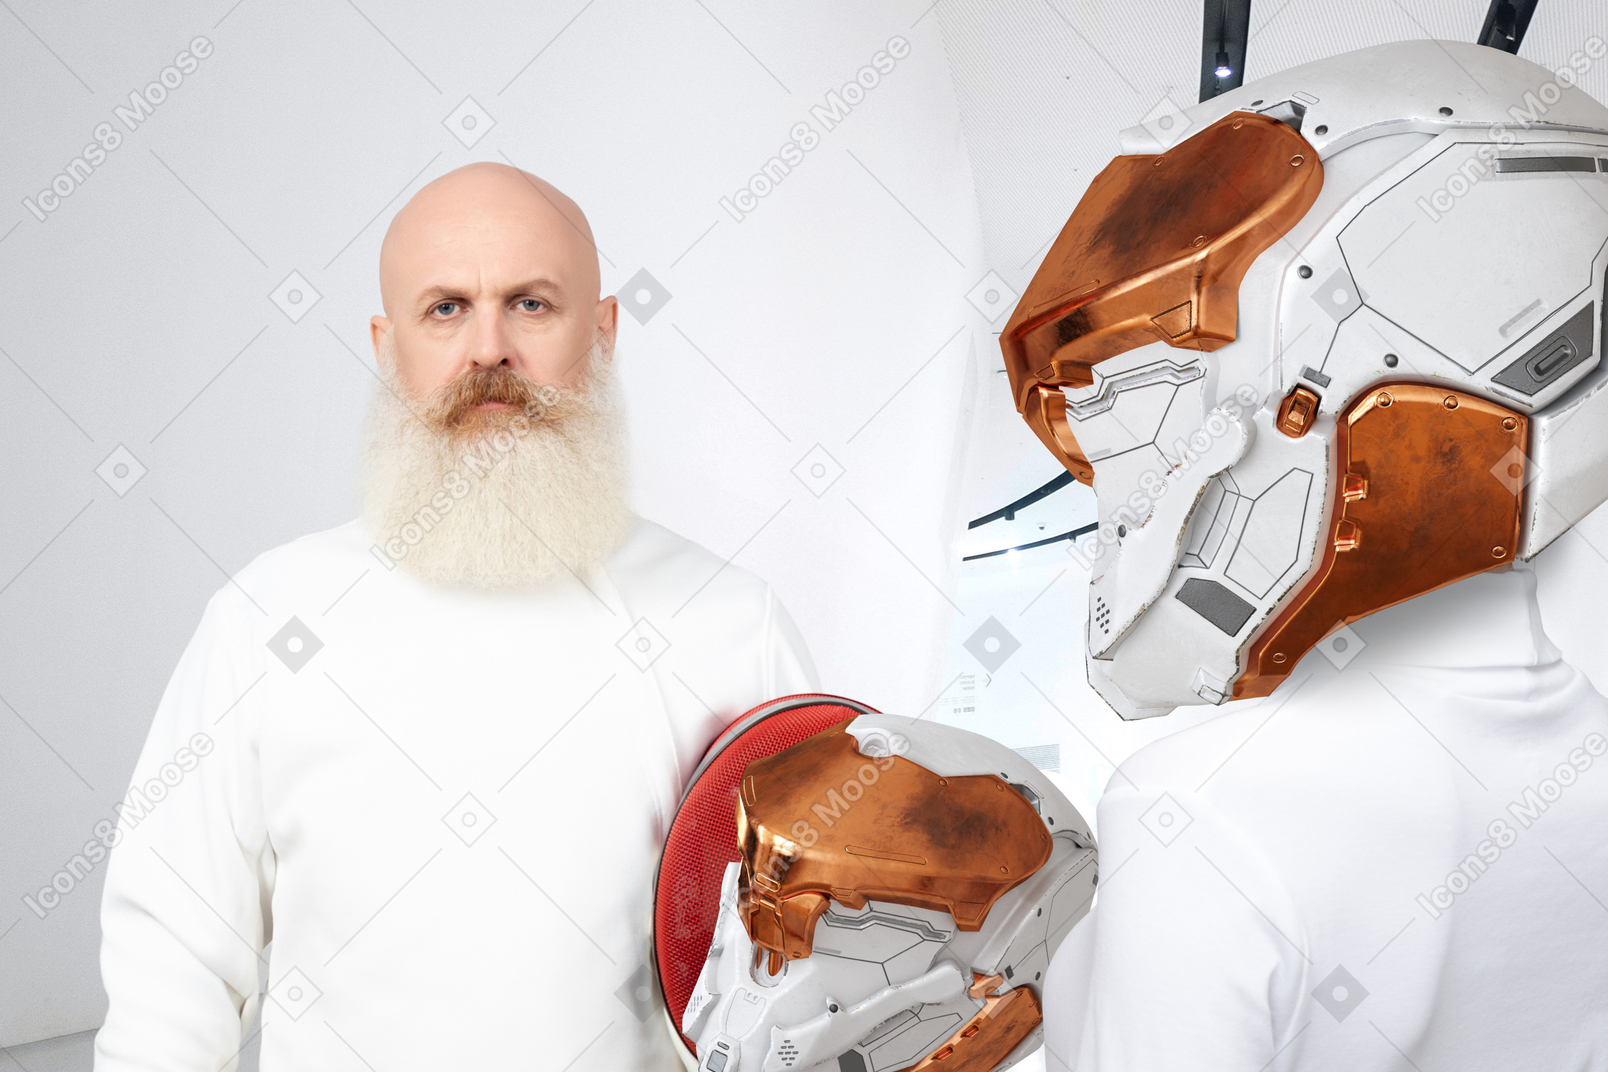 Men in helmets on a spaceship